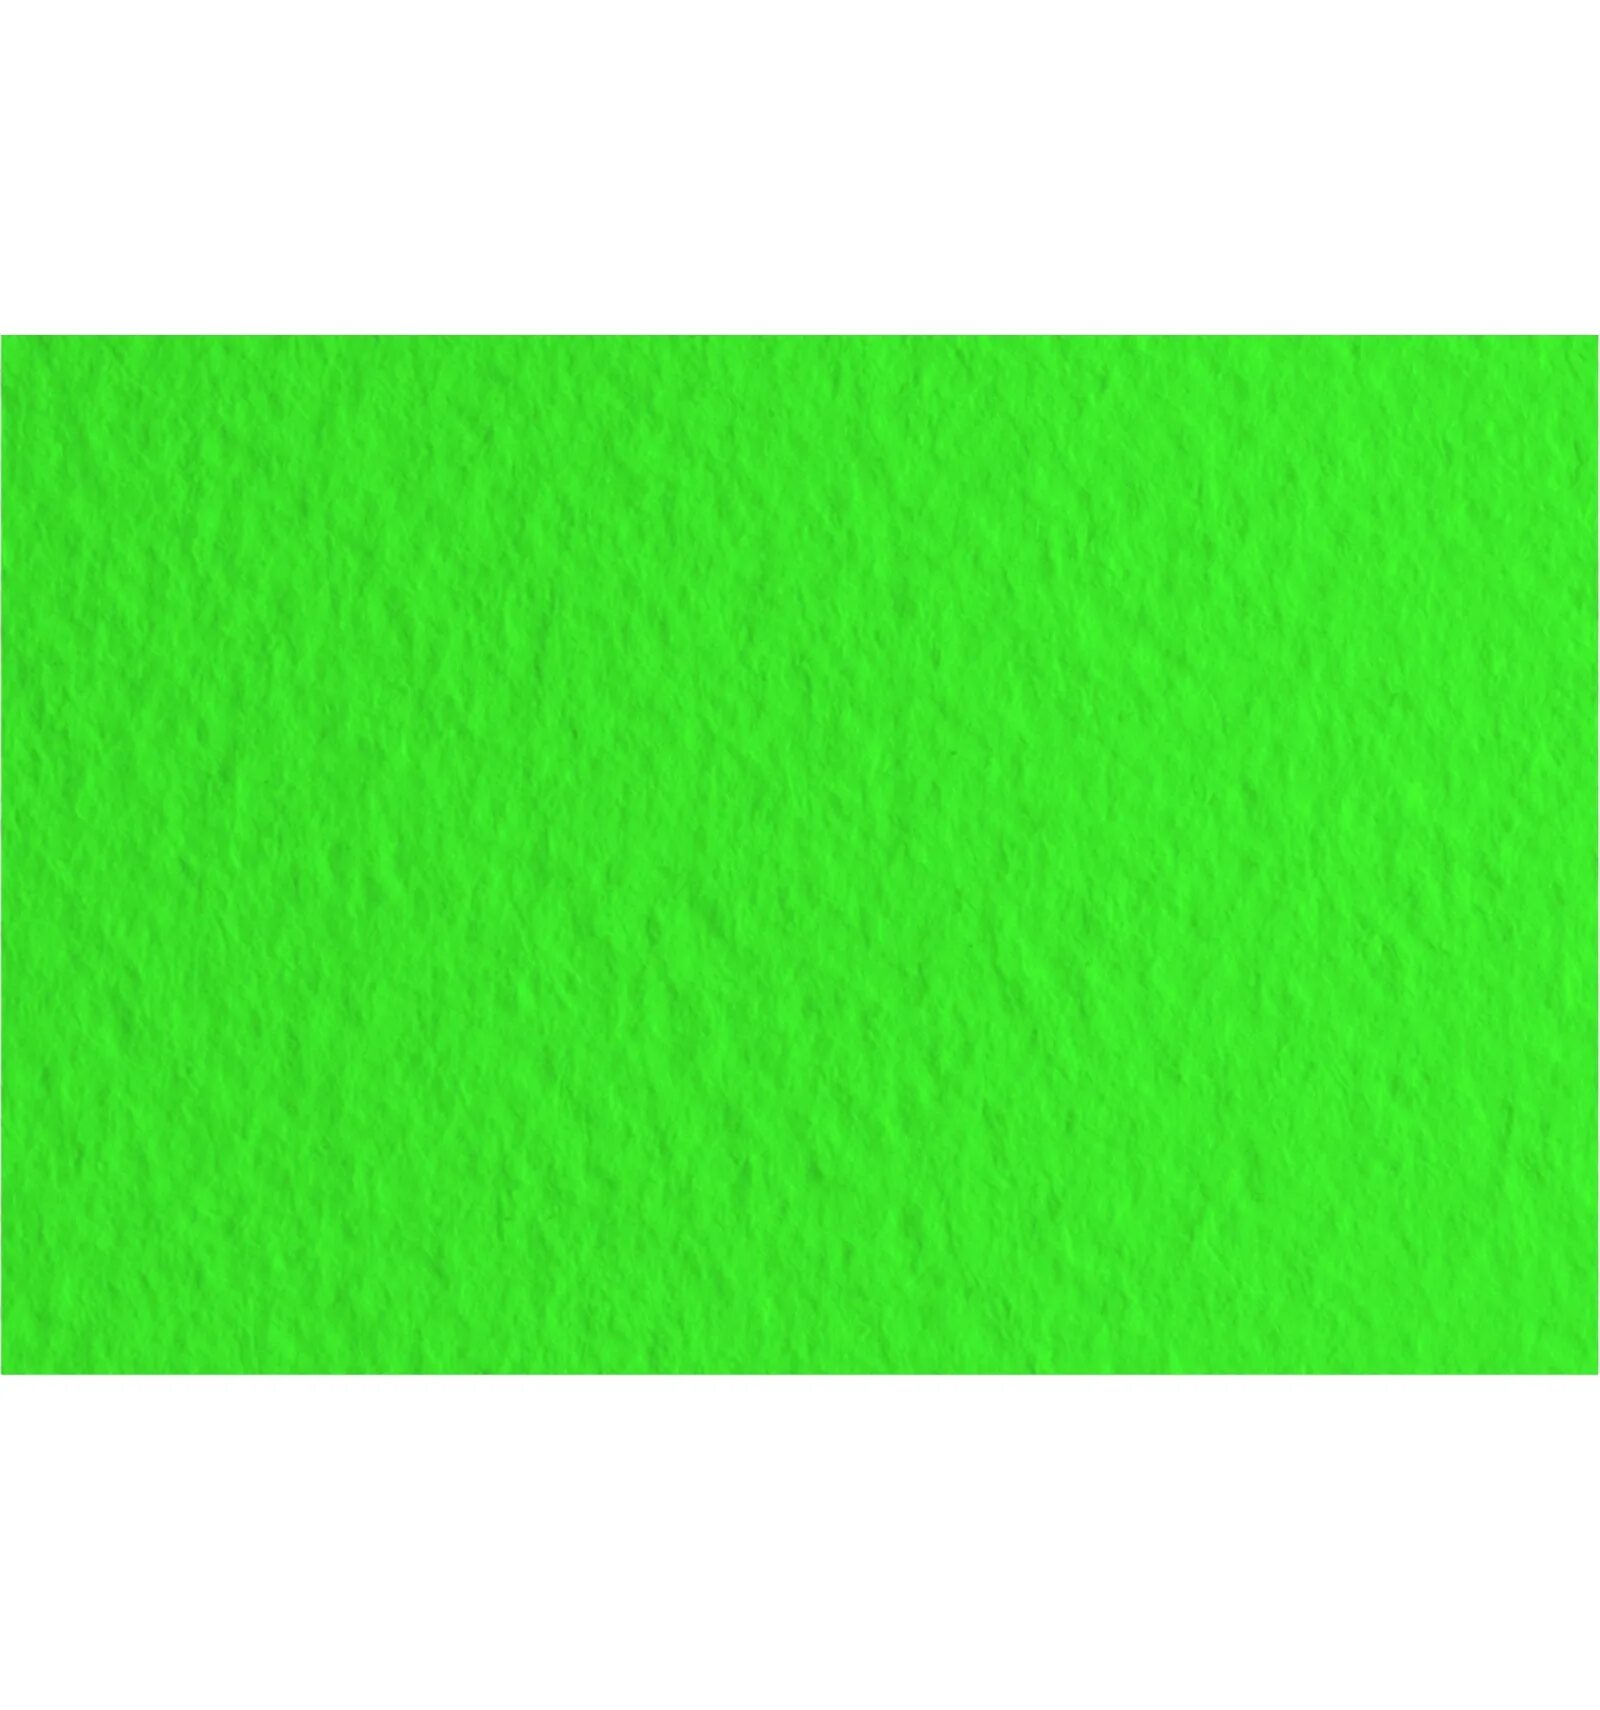 Fabriano "Tiziano" зеленый темный. Бумага салатового цвета. Зеленая бумага. Цветная бумага зеленого цвета.